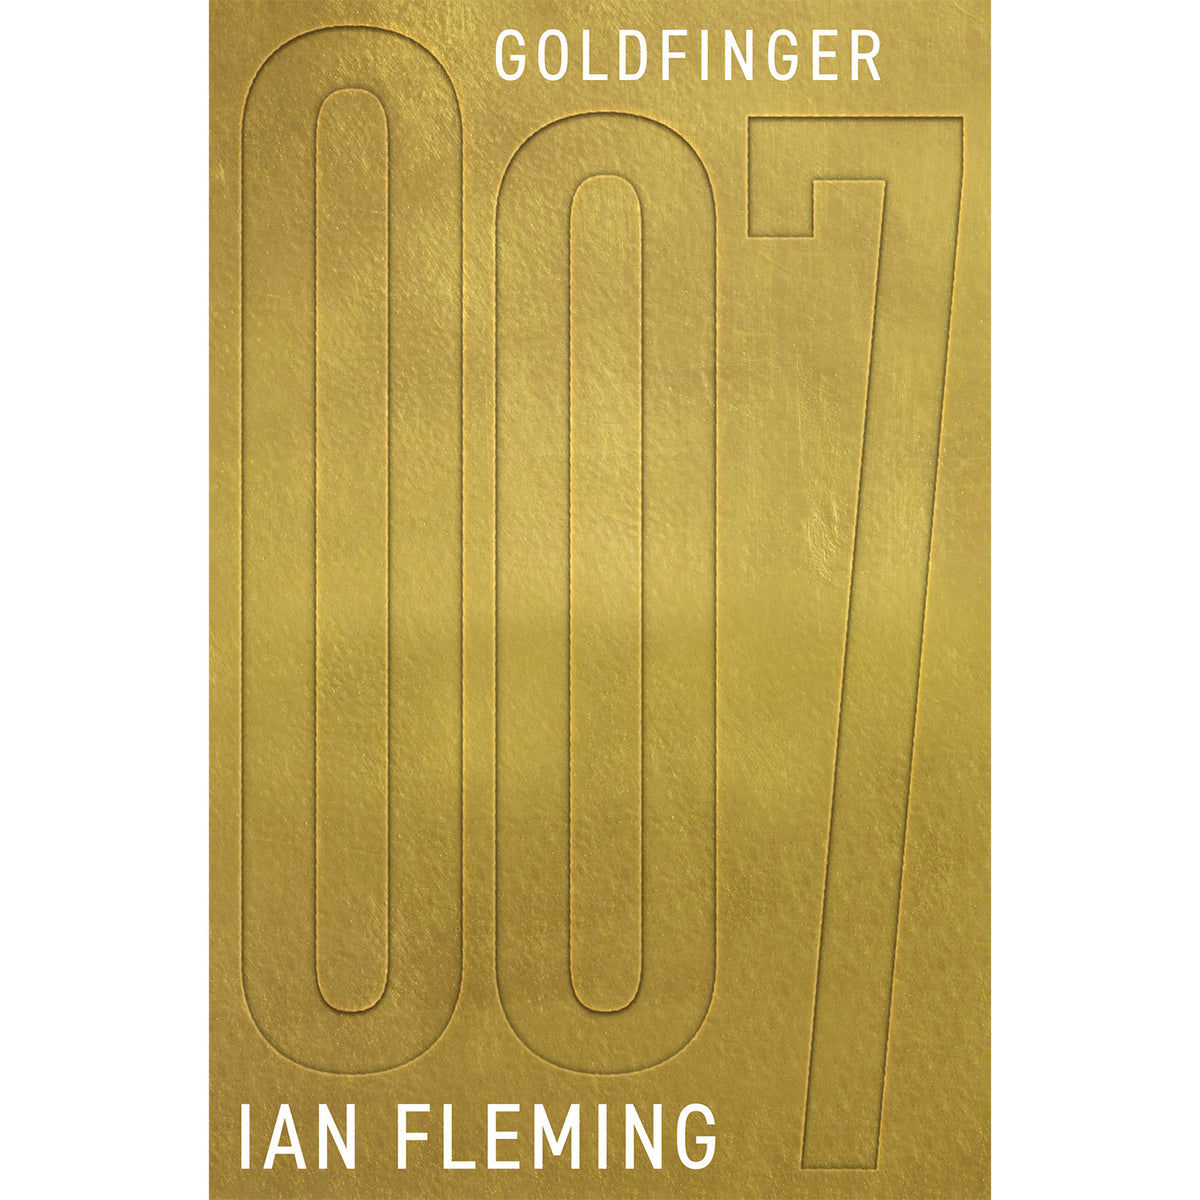 James Bond Goldfinger Buch - Von Ian Fleming